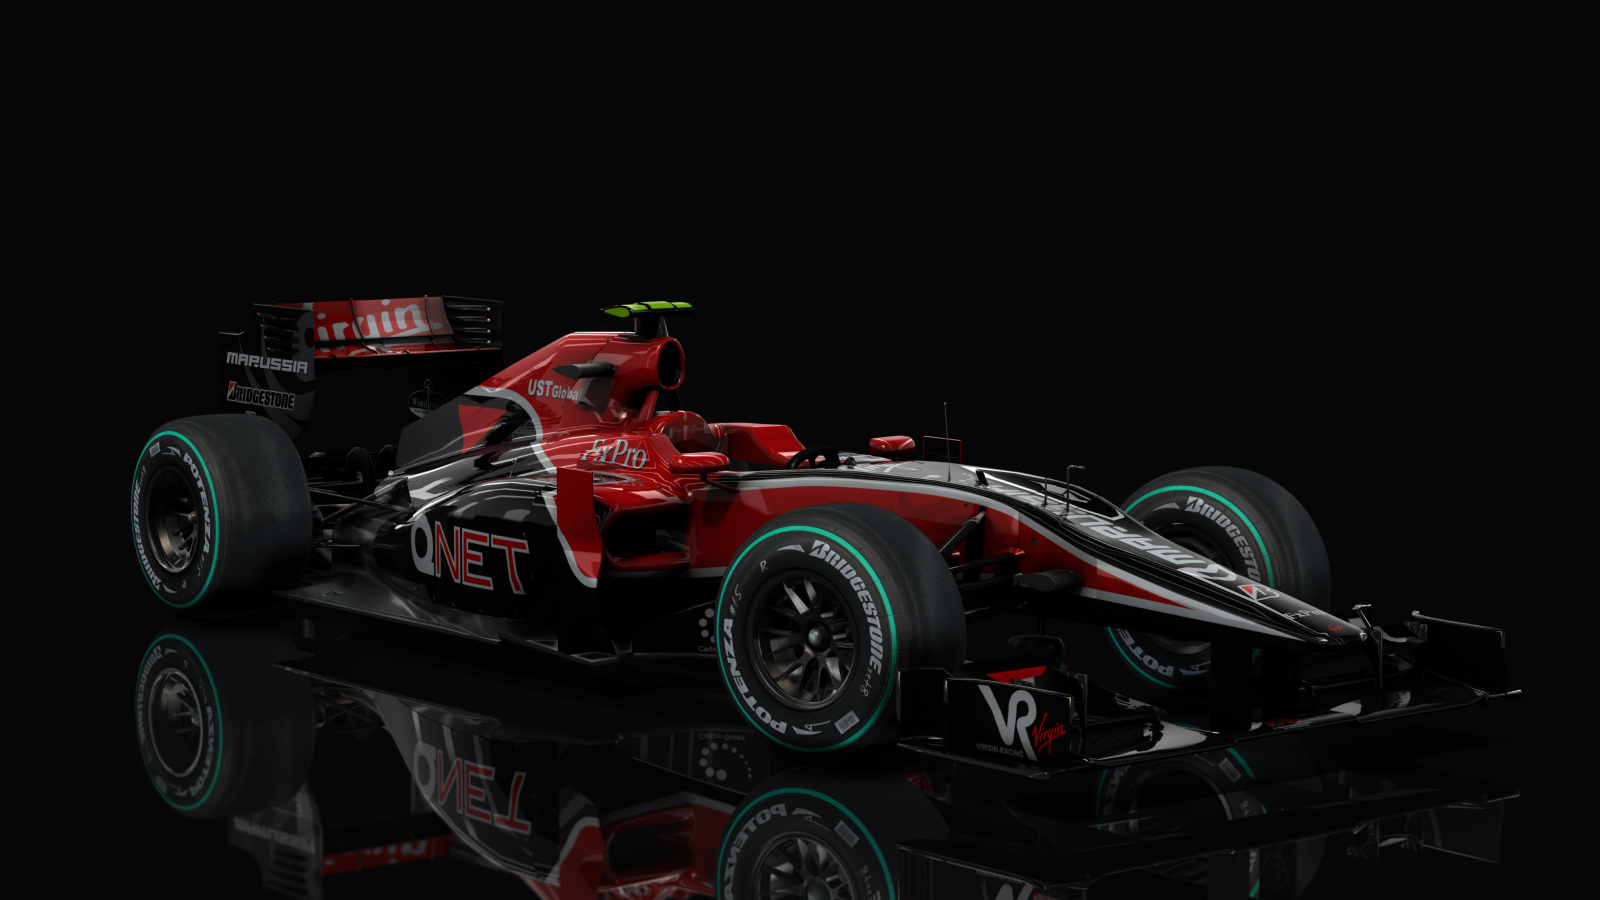 F1 2010 - Virgin VR-01, skin ZdiGrassi